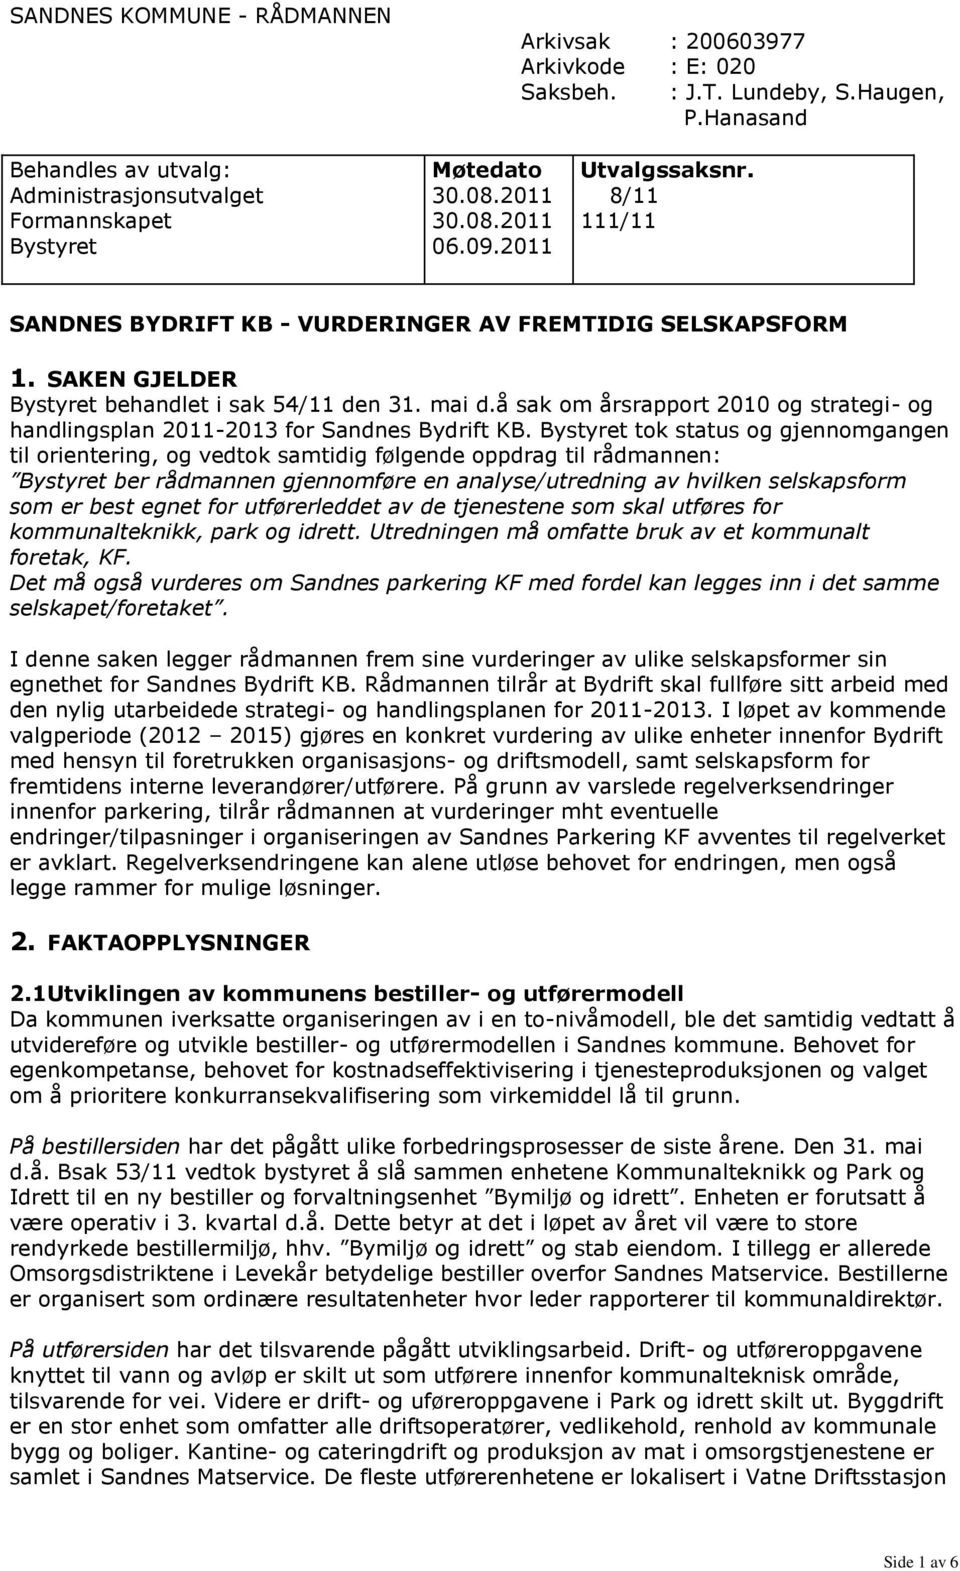 SAKEN GJELDER Bystyret behandlet i sak 54/11 den 31. mai d.å sak om årsrapport 2010 og strategi- og handlingsplan 2011-2013 for Sandnes Bydrift KB.